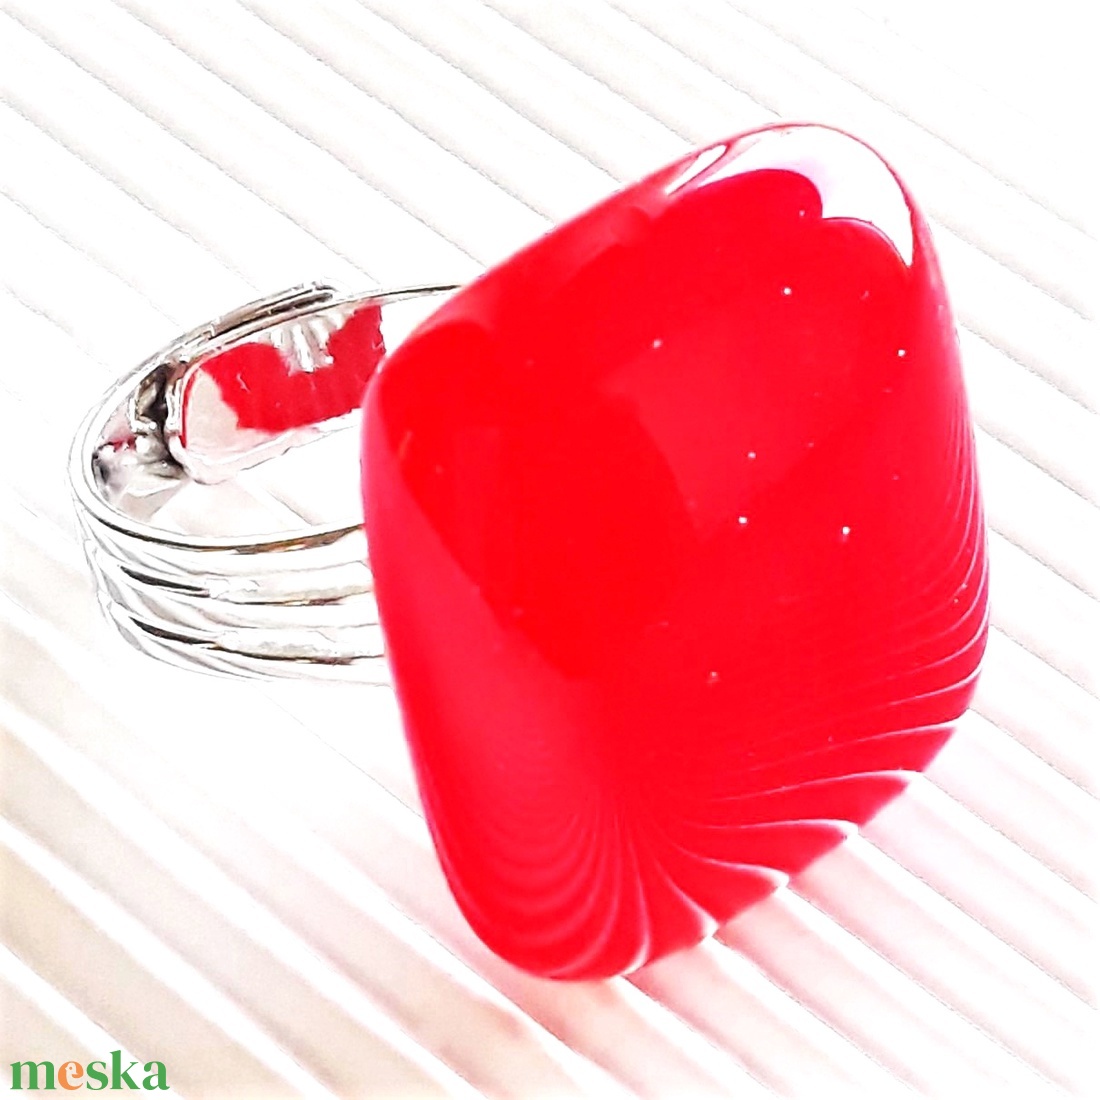 Ferrari piros kocka üveg gyűrű, üvegékszer - ékszer - gyűrű - statement gyűrű - Meska.hu